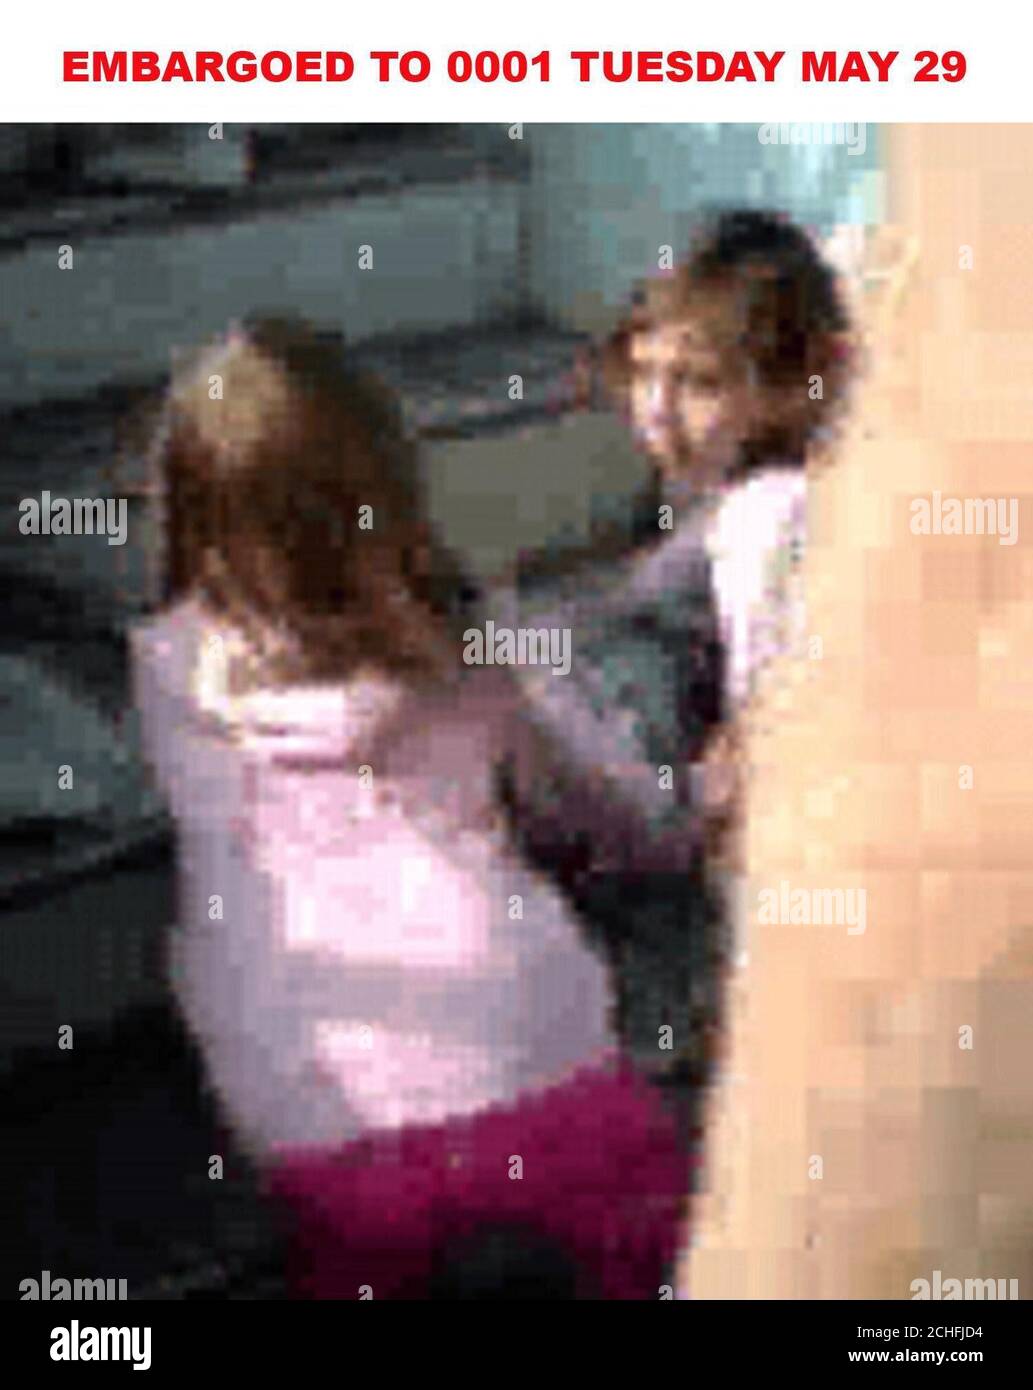 Ancora preso dal telefono cellulare riprese di Madeleine McCann (pantaloni rosa) con un'altra bambina a bordo di un aereo presso l'aeroporto East Midlands. Foto Stock